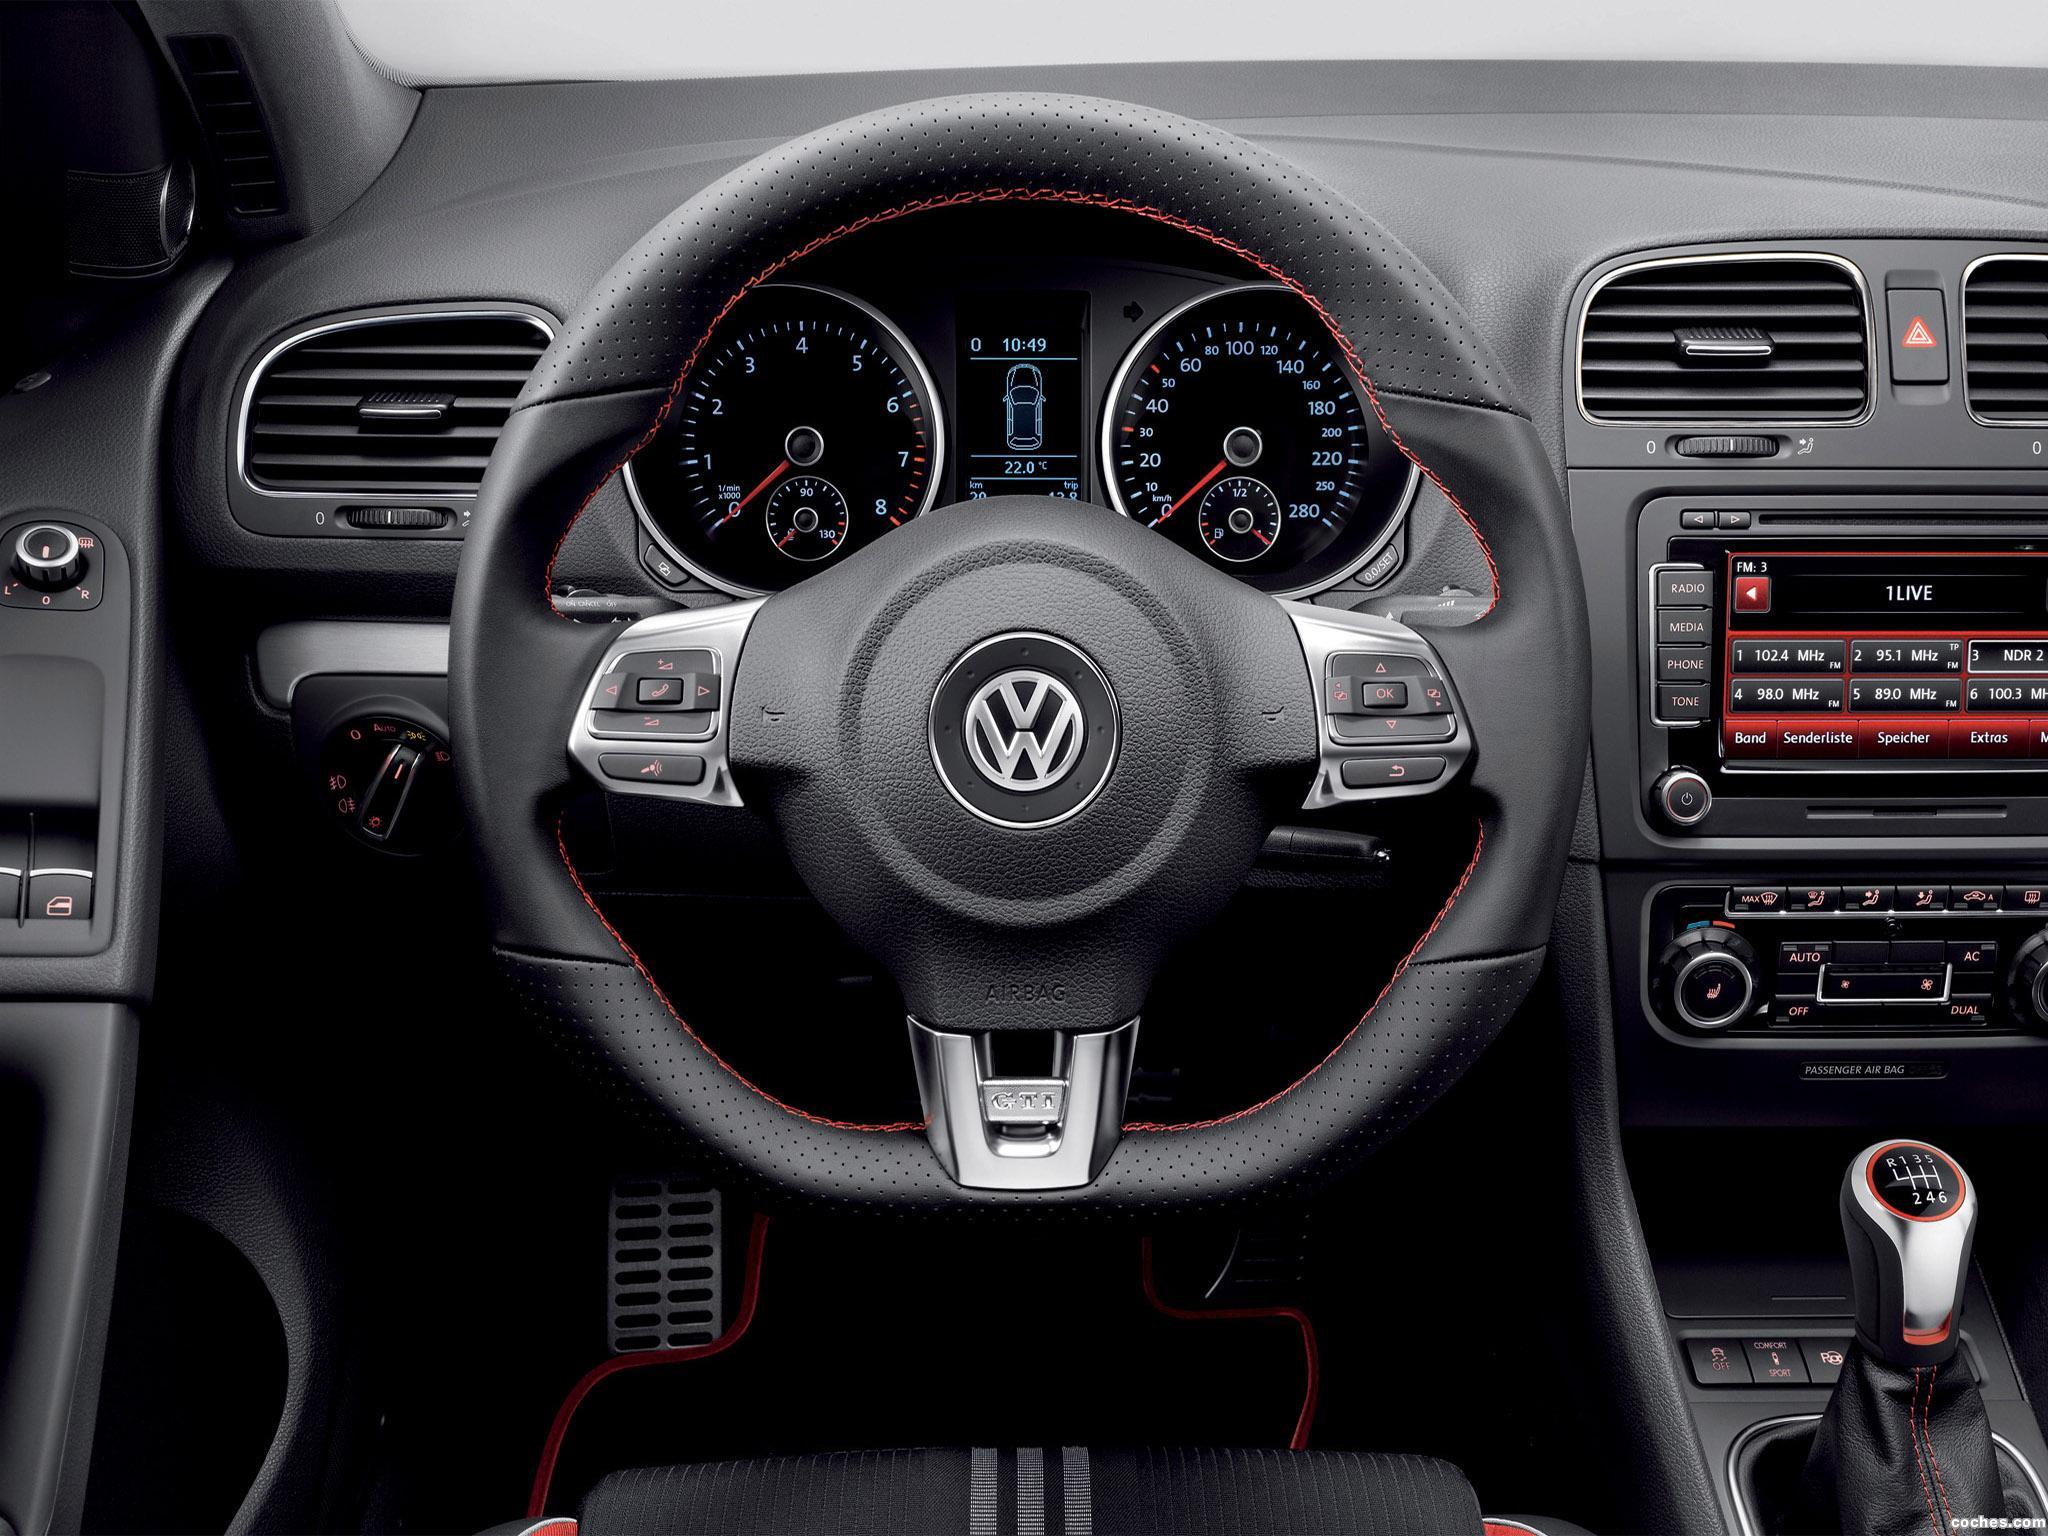 Generalizar Asado apagado Fotos de Volkswagen Golf VI GTi Adidas 2010